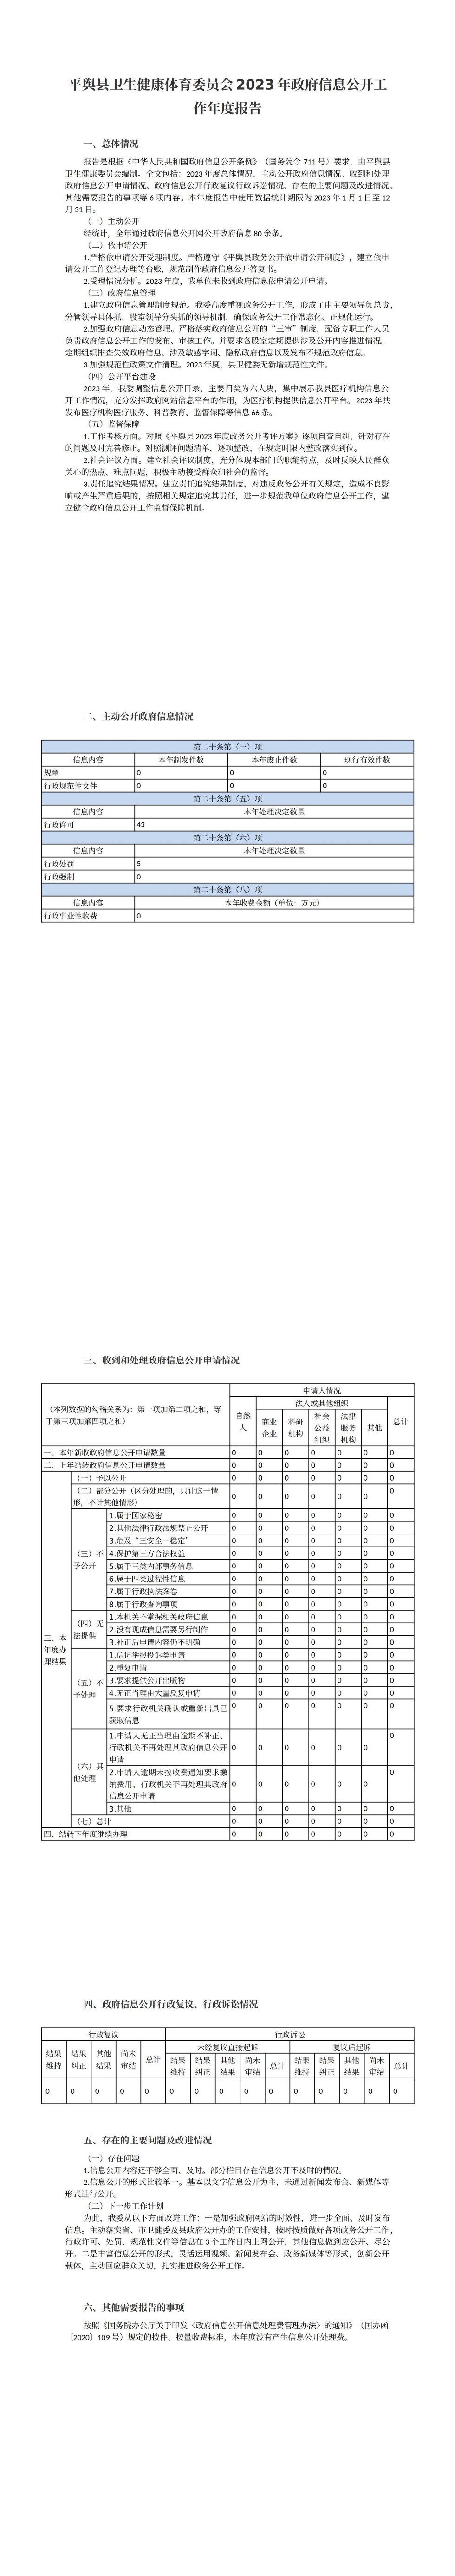 平舆县卫生健康体育委员会2023年政府信息公开工作年度报告 (1)_00.jpg